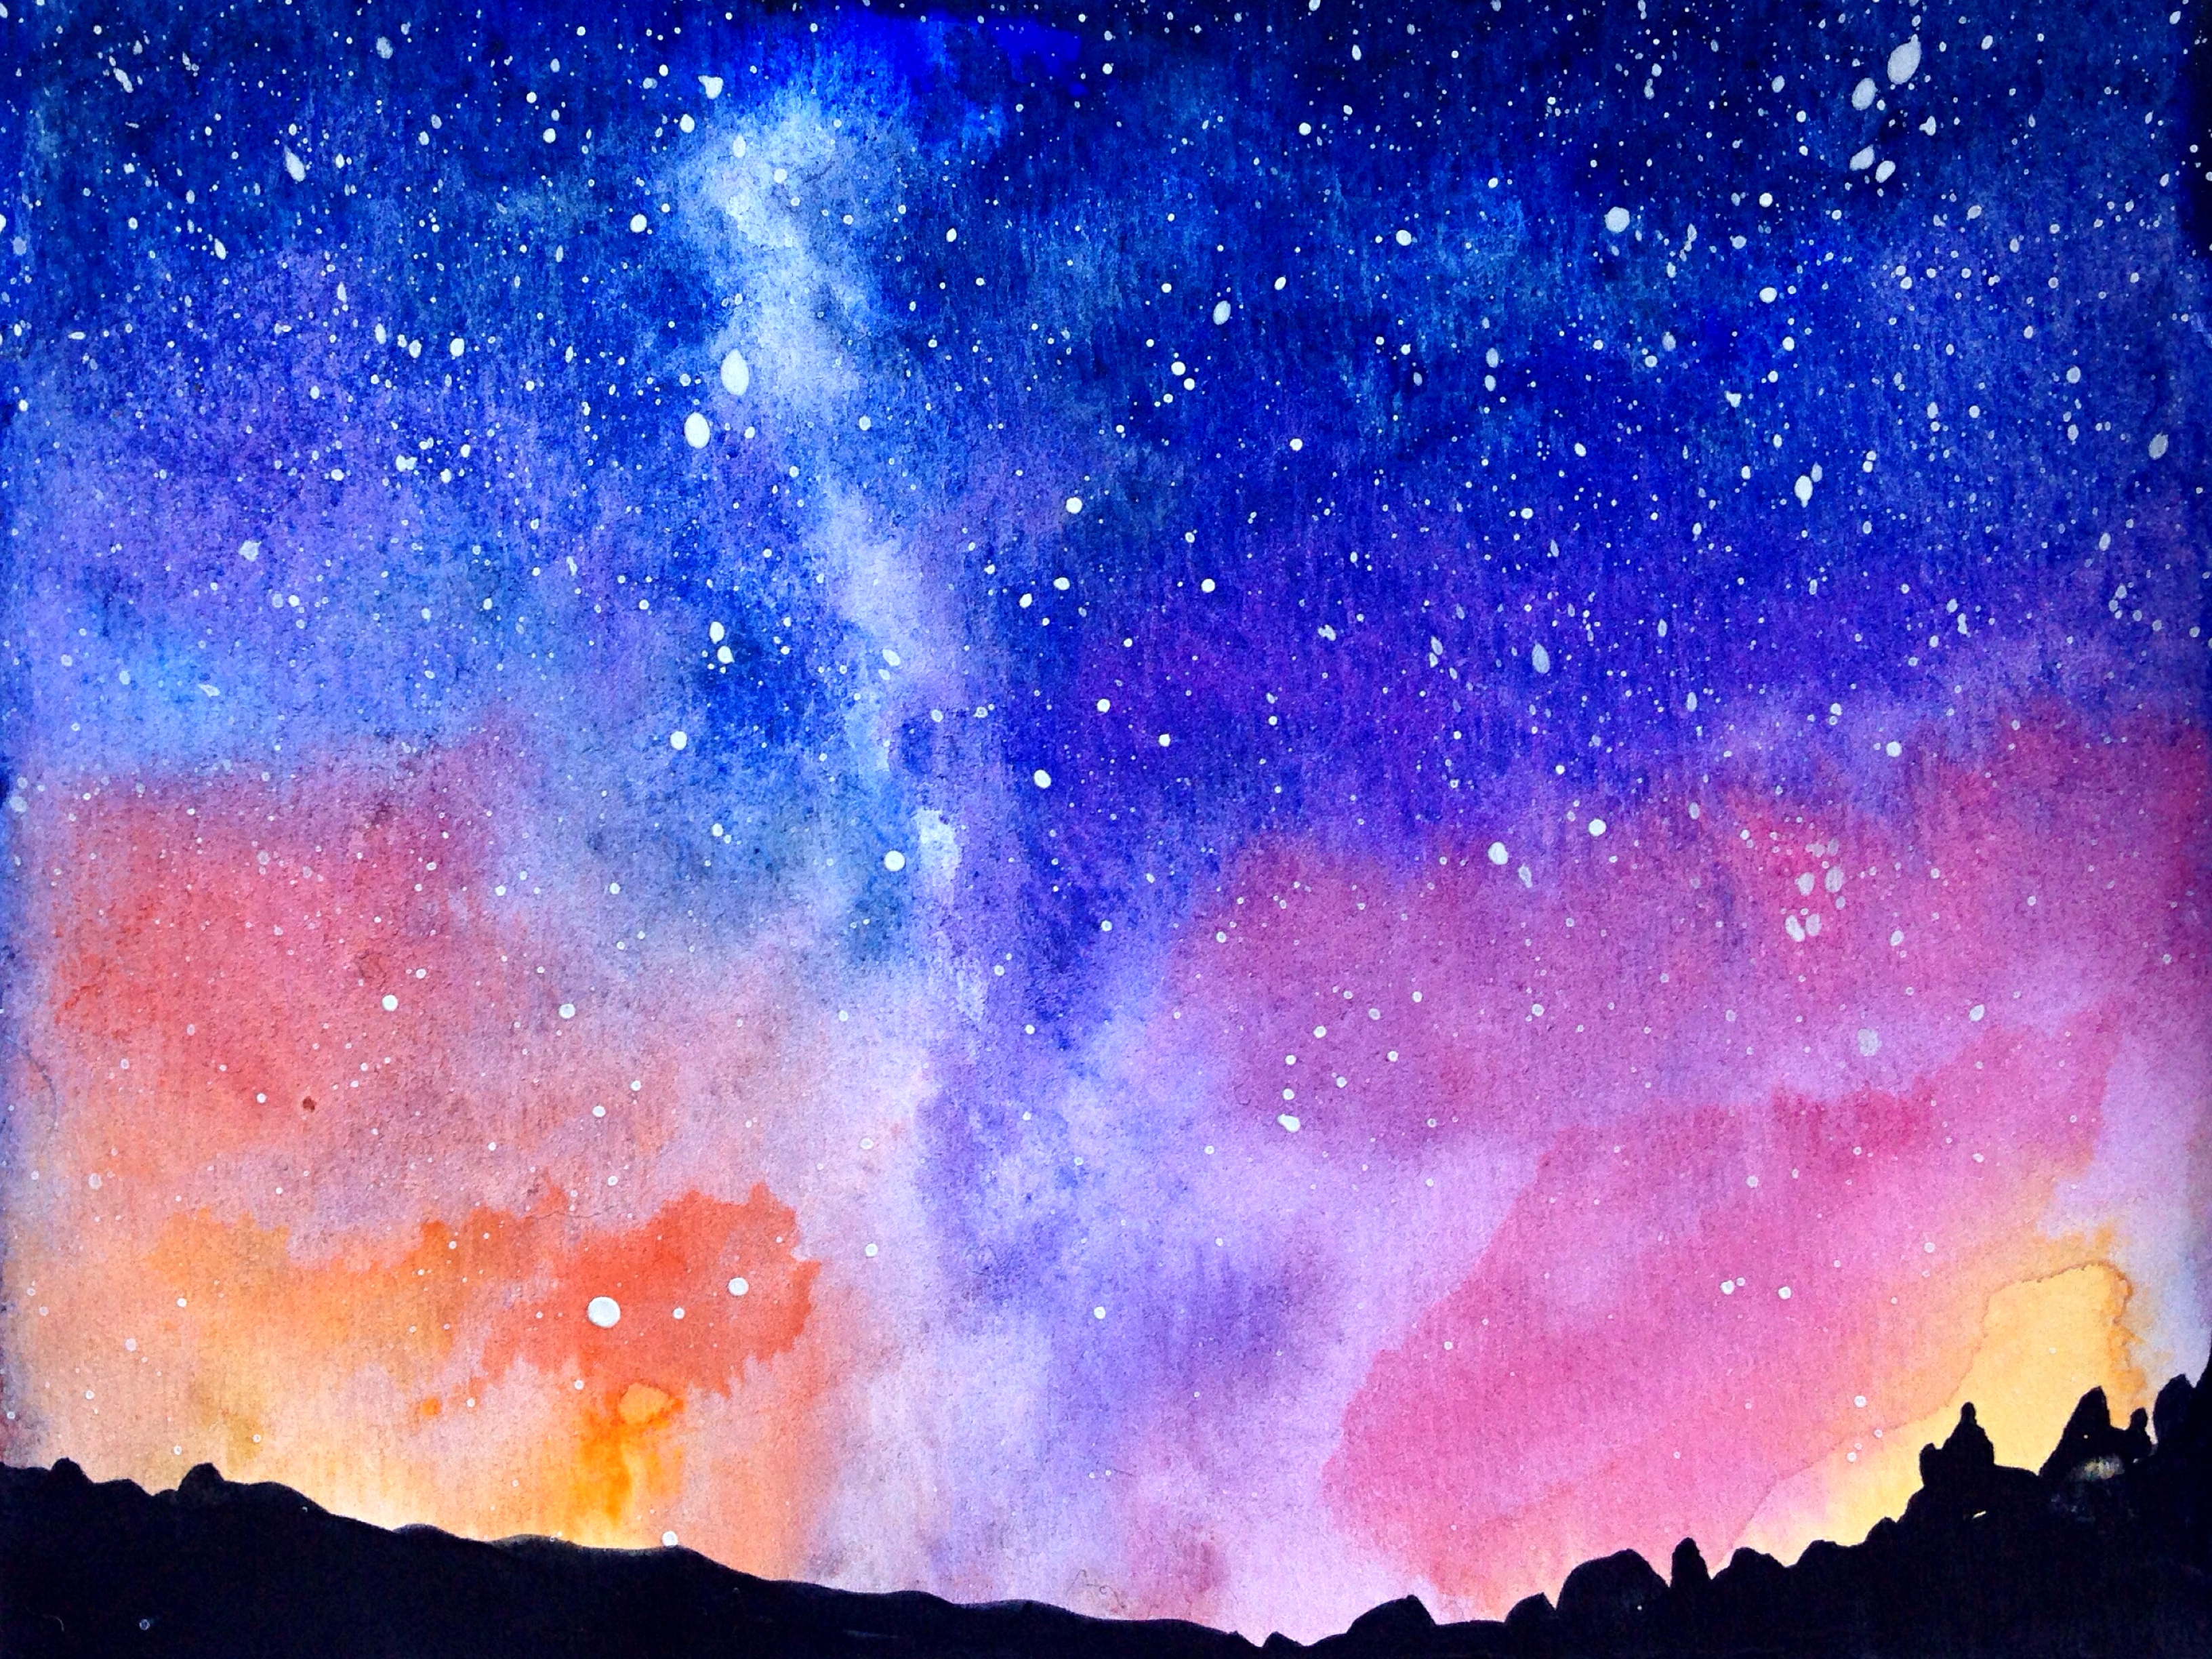 水彩画の壁紙,空,天体,銀河,雰囲気,宇宙